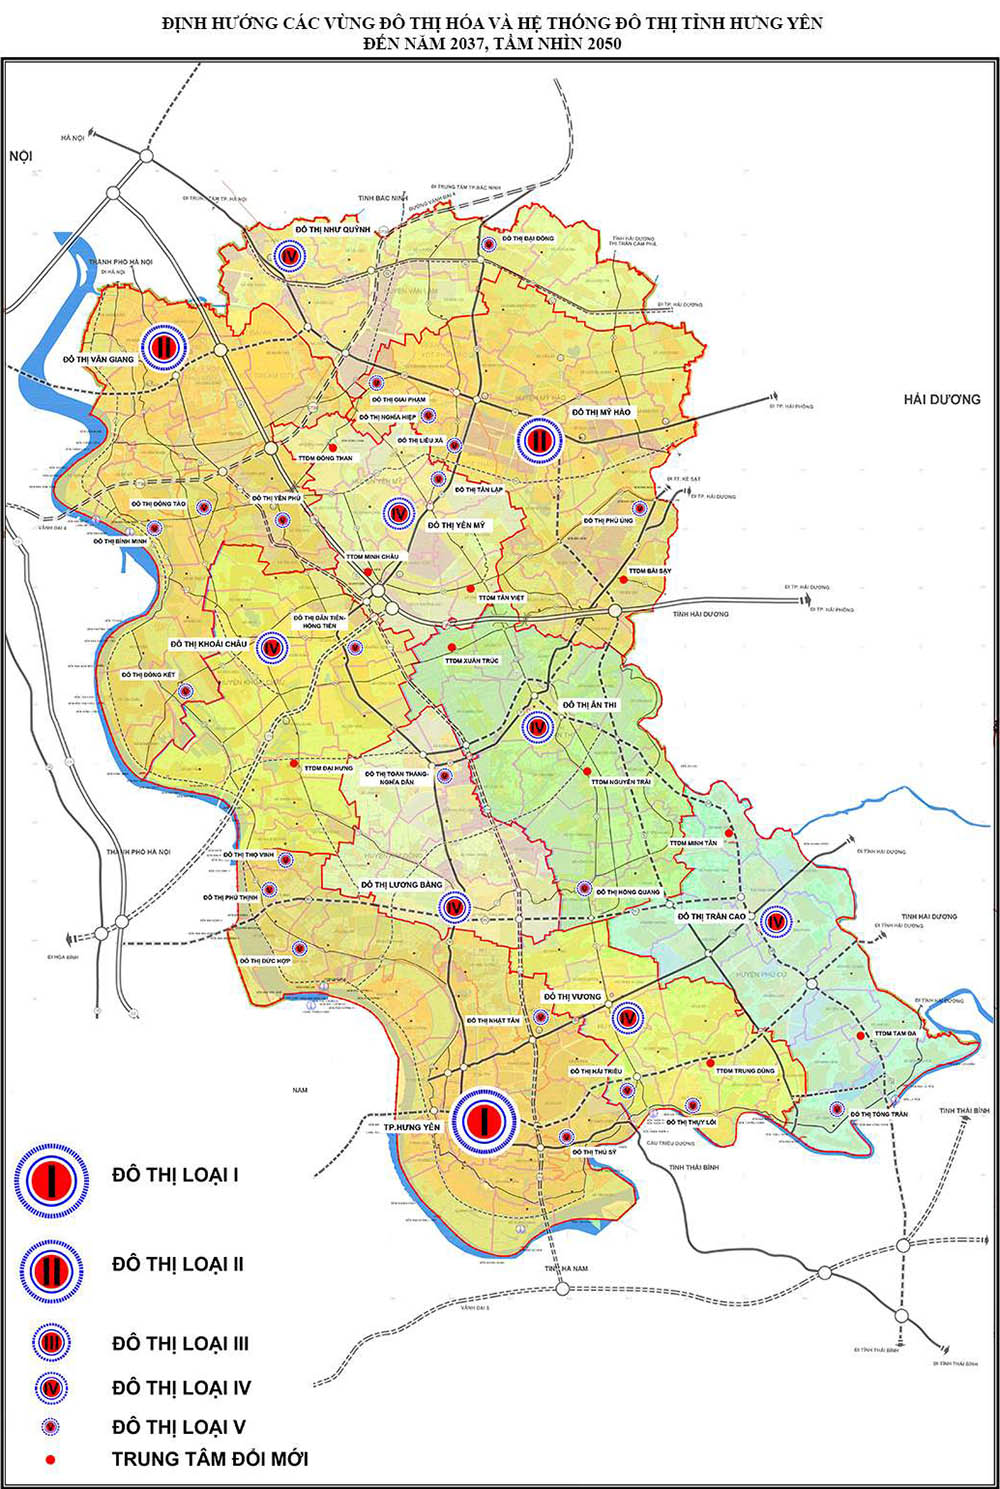 Quy hoạch phát triển đô thị tỉnh Hưng Yên đến năm 2050